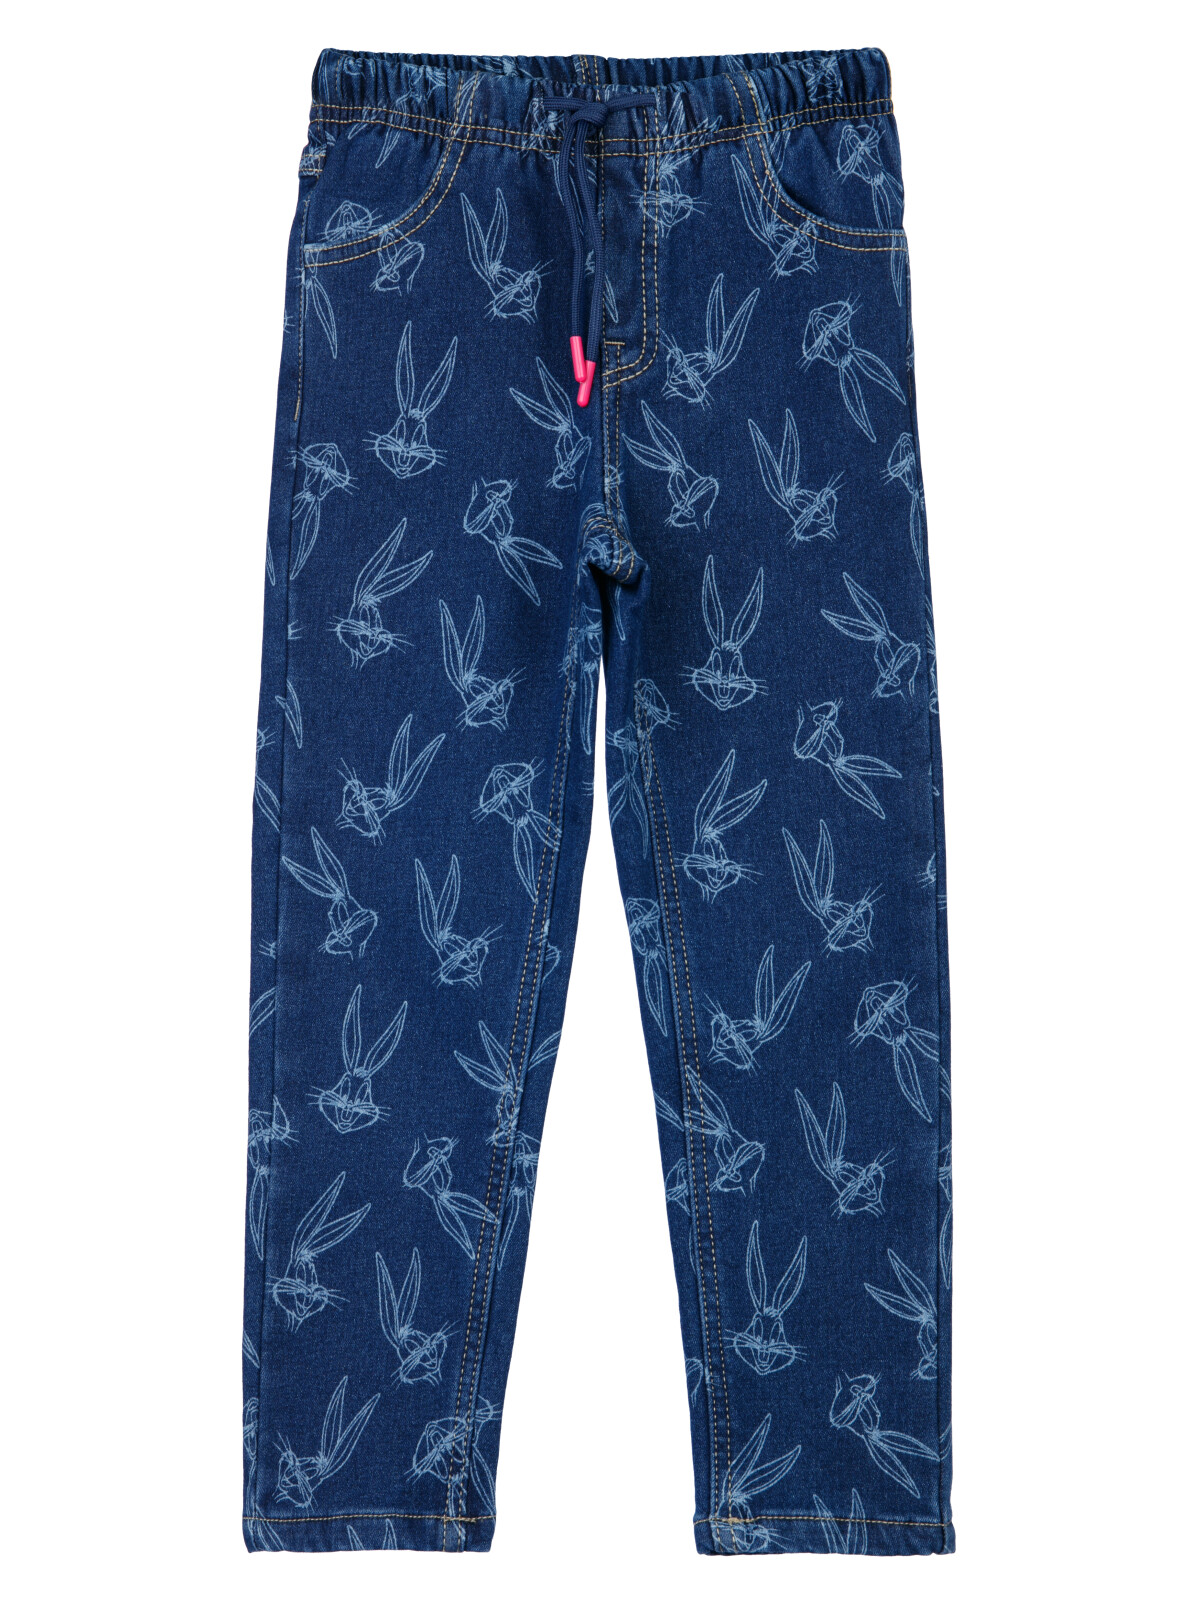 Брюки текстильные джинсовые утепленные флисом для девочек PlayToday, тёмно-синий, 122